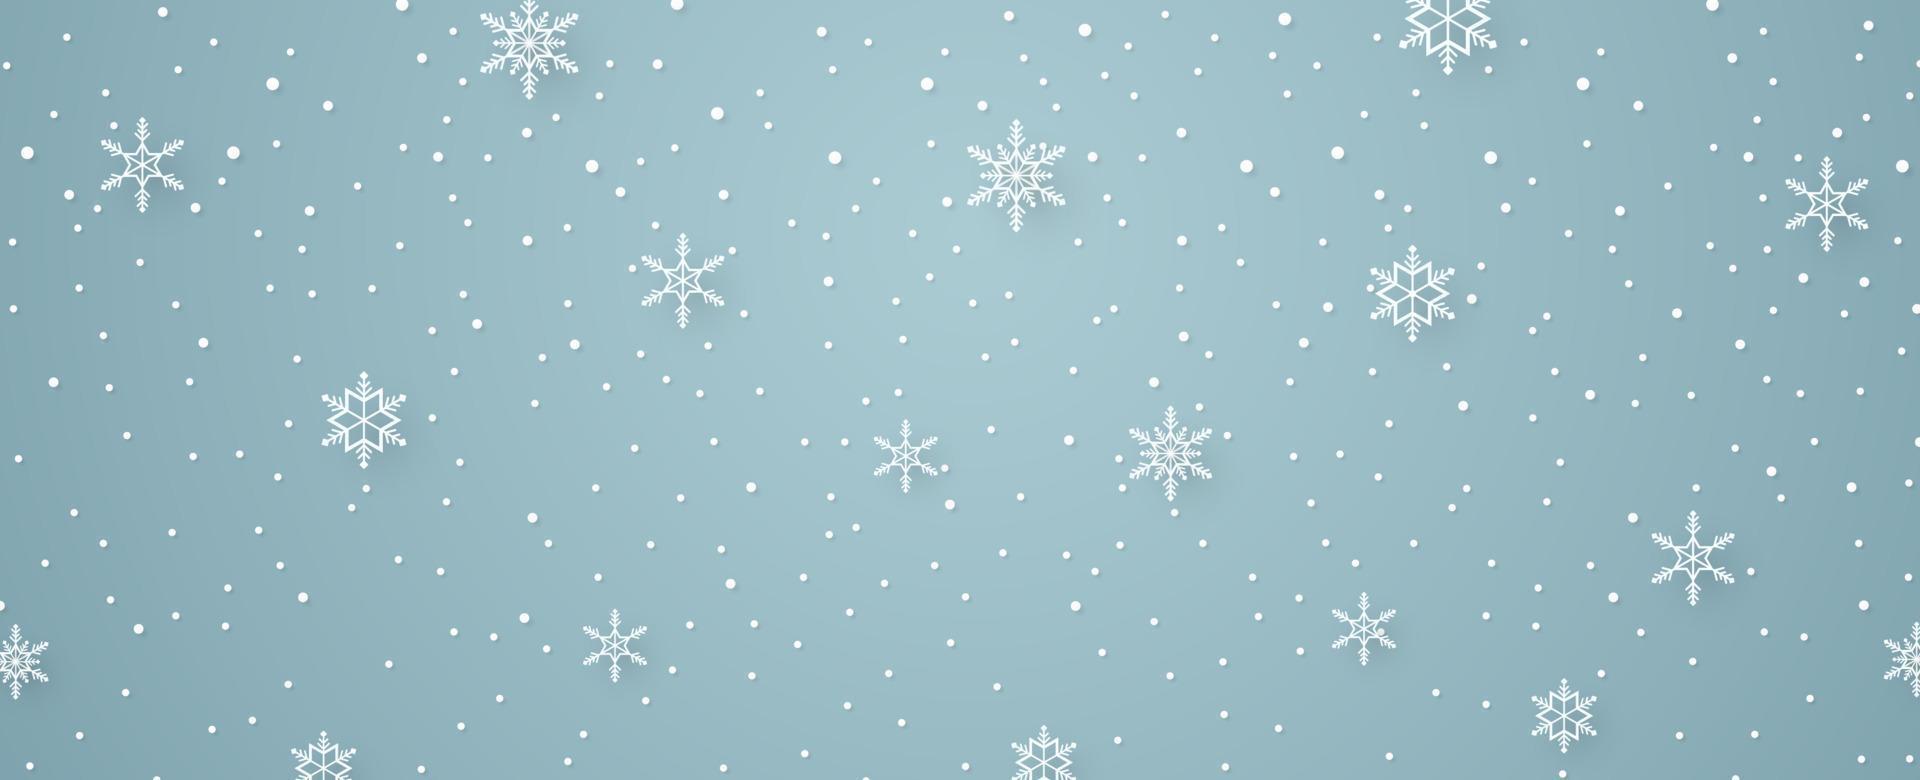 Feliz Navidad, copos de nieve y fondo de nevadas en estilo de arte de papel vector